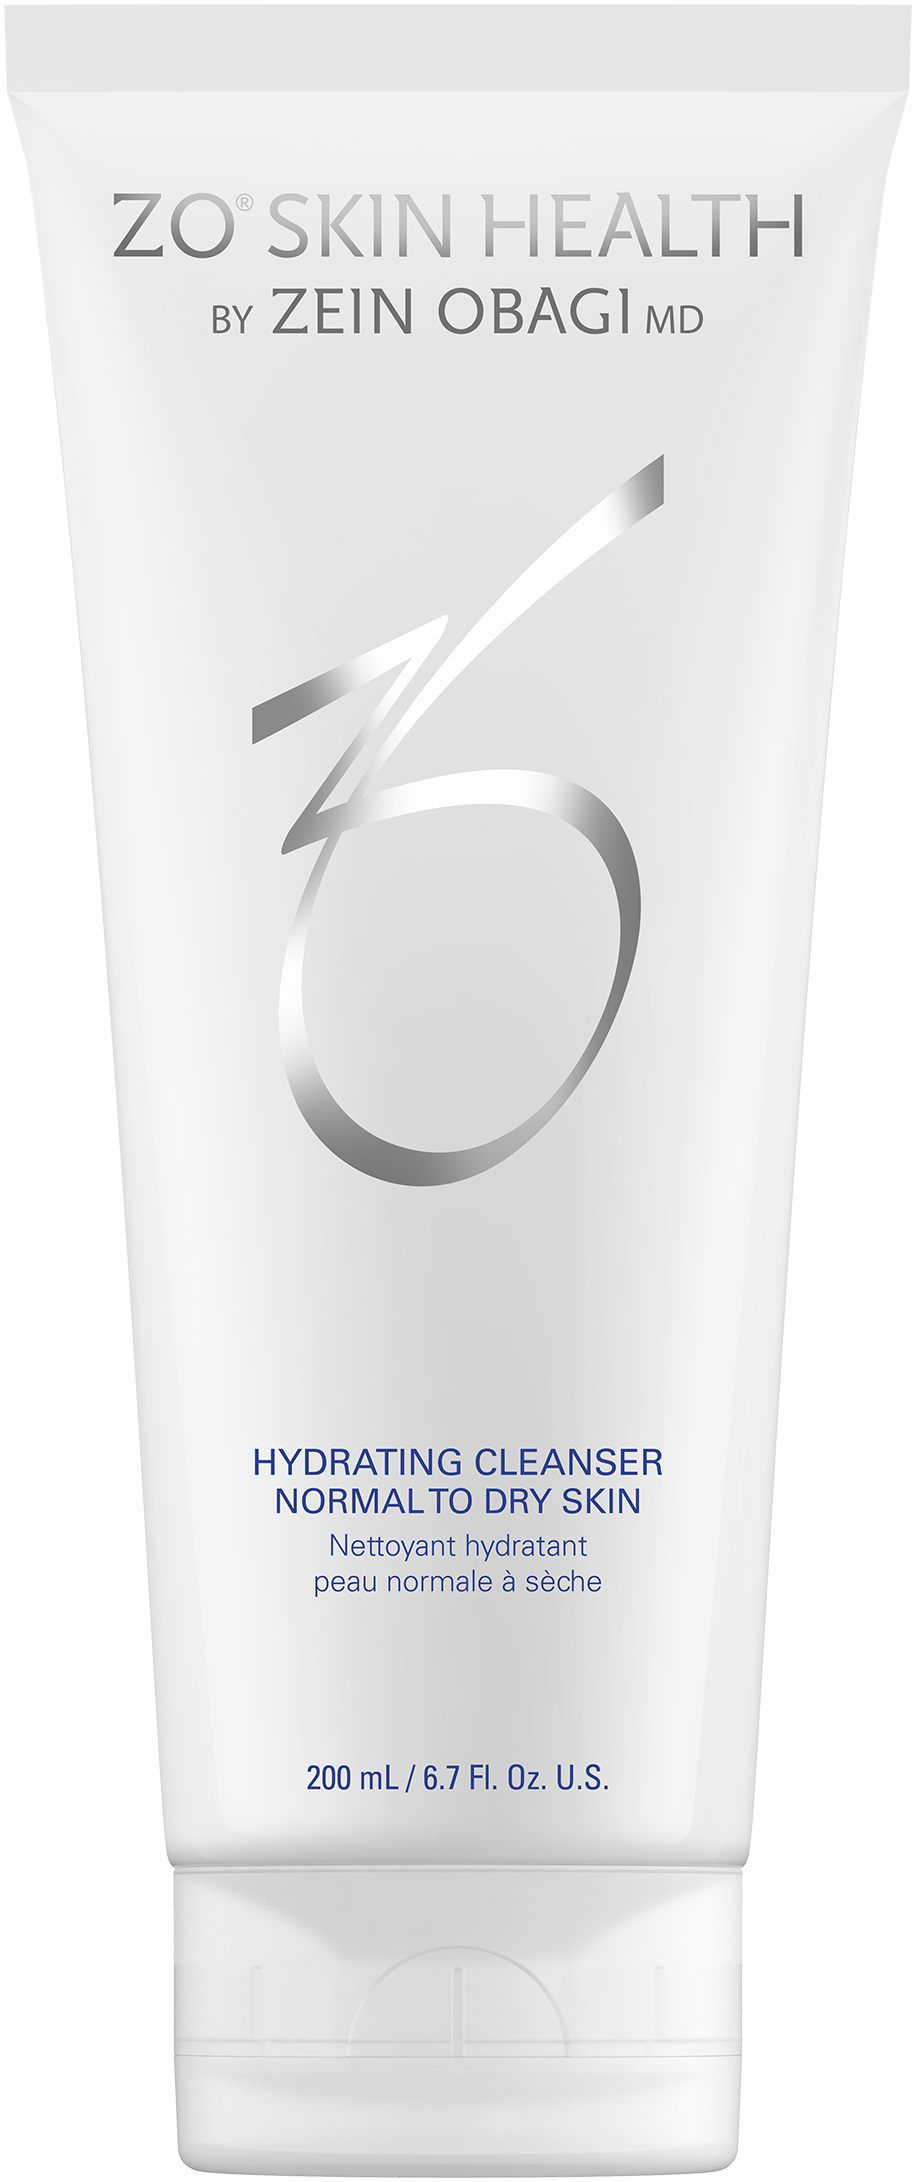 Hydrating Cleanser - Avebelle Skin